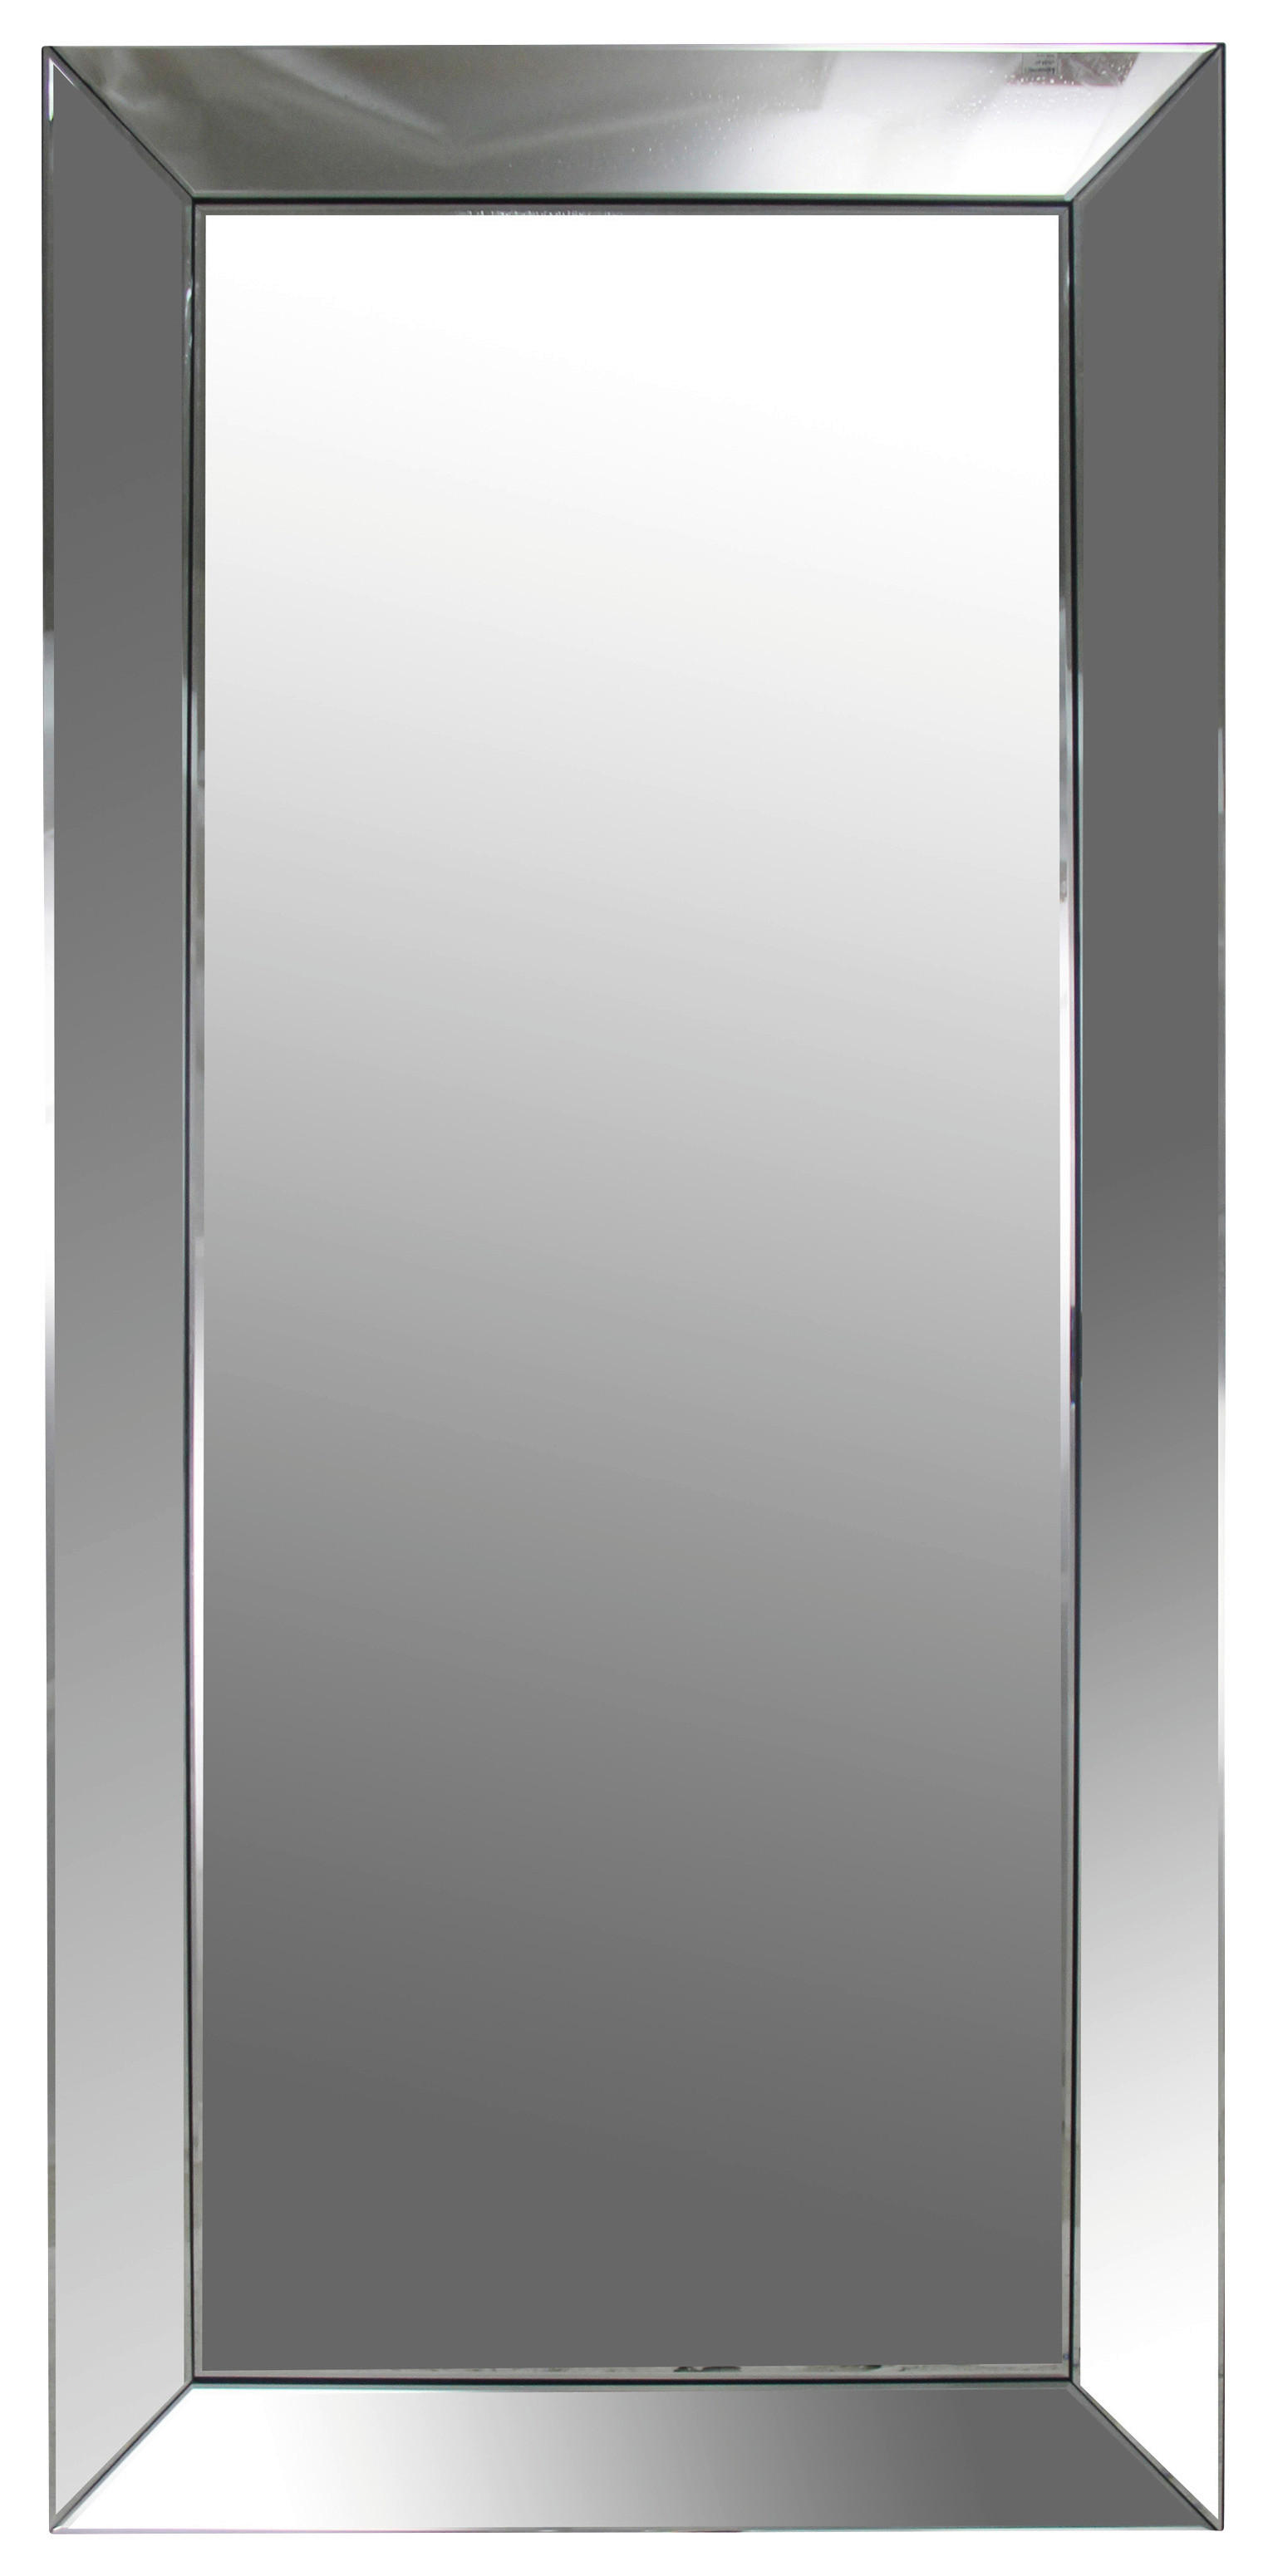 STENSKO OGLEDALO, 88/188/5 cm steklo, leseni material  - srebrne barve, Design, steklo/leseni material (88/188/5cm) - Xora